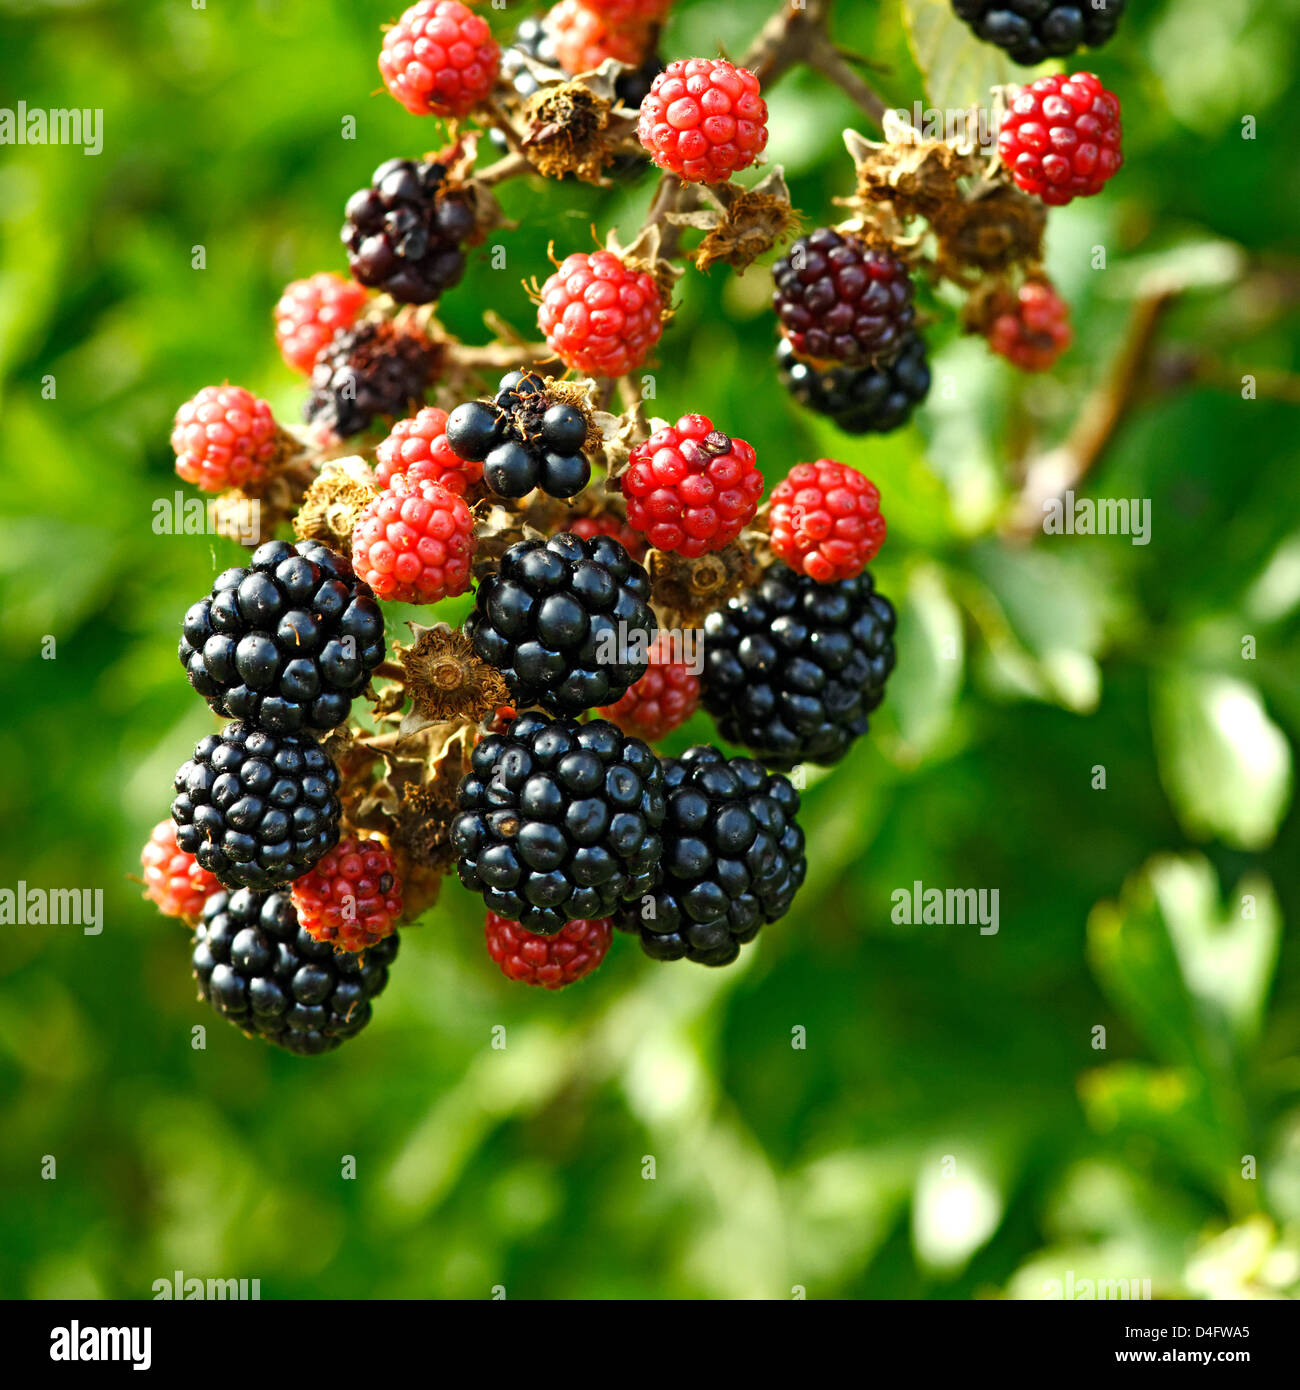 Wild blackberries growing in a hedgerow, UK Stock Photo